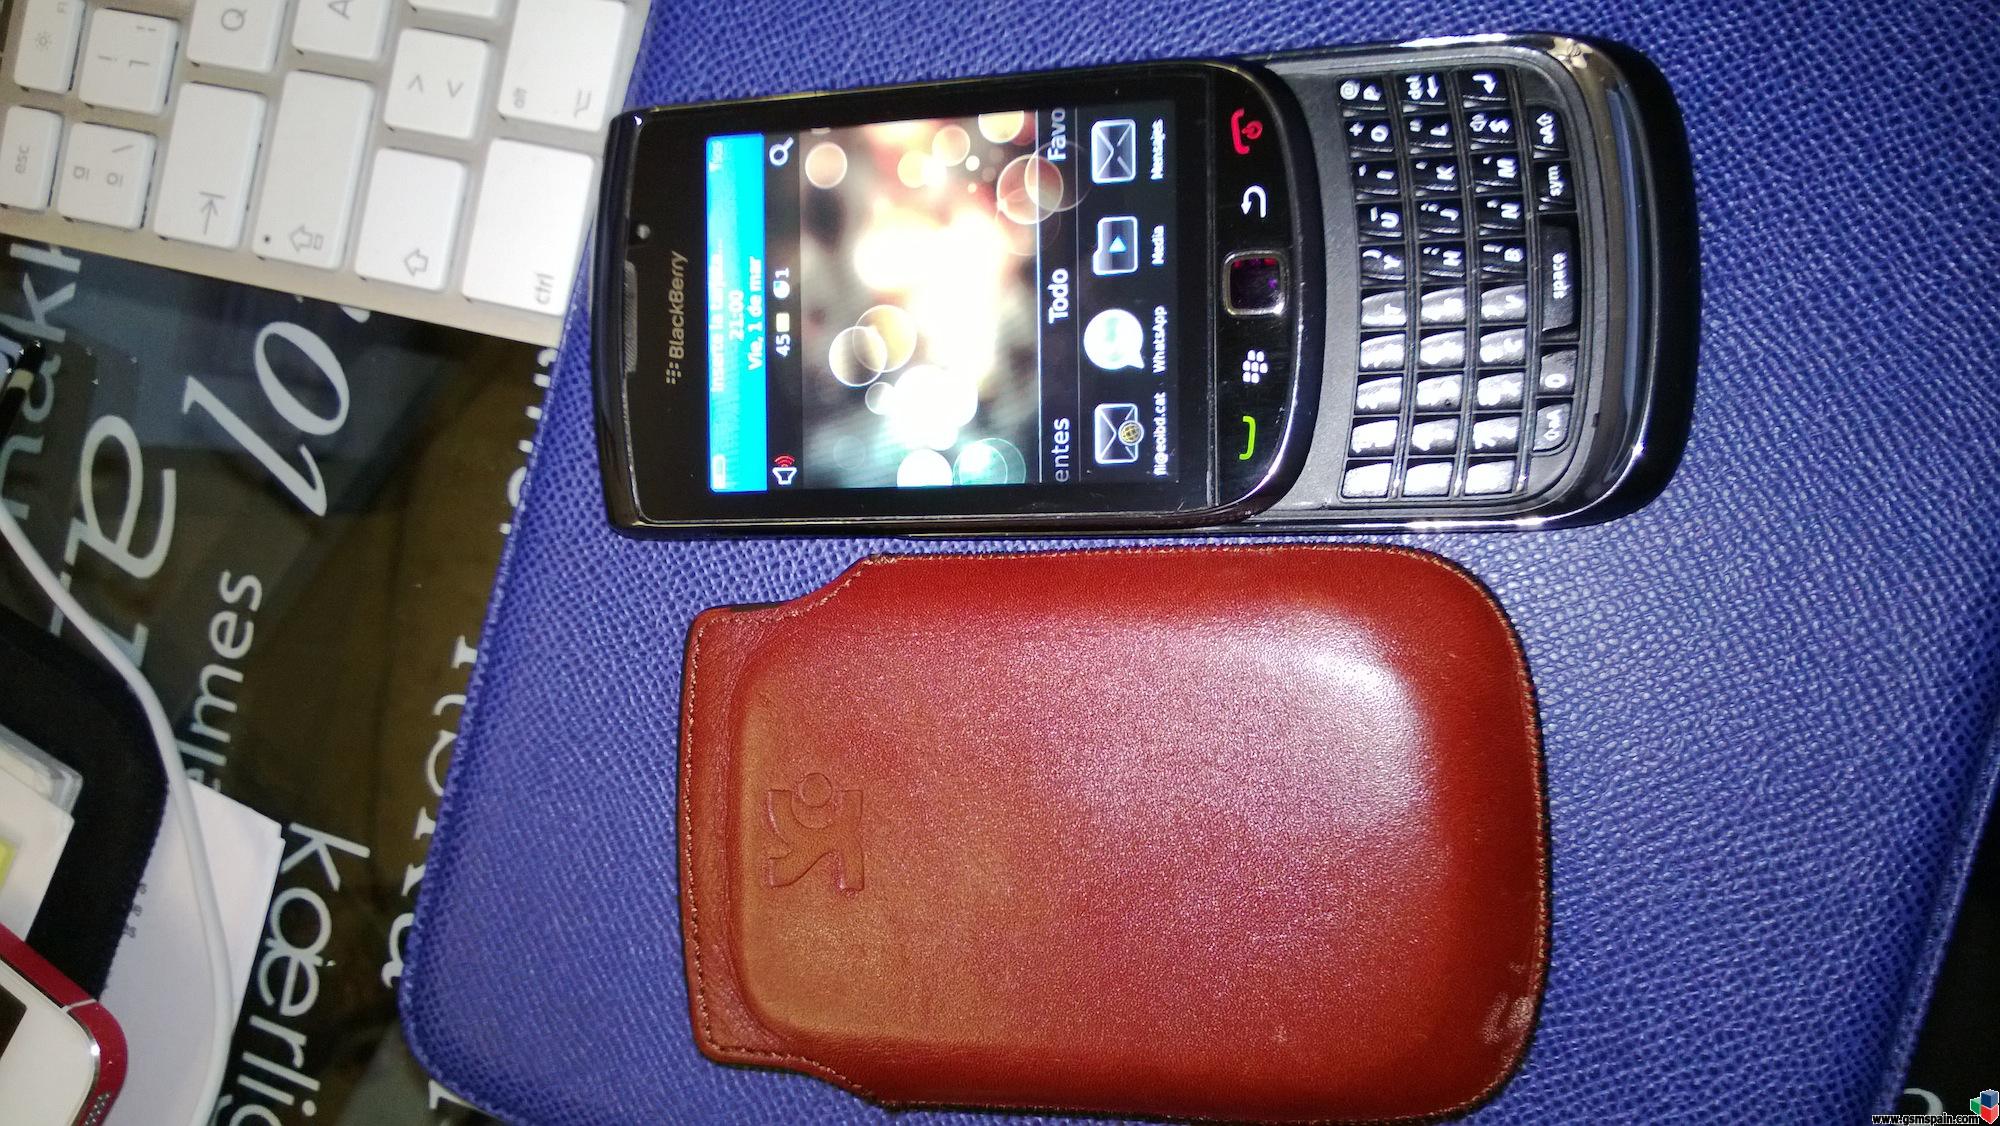 [VENDO] Blackberry torch 9800 (Barcelona)